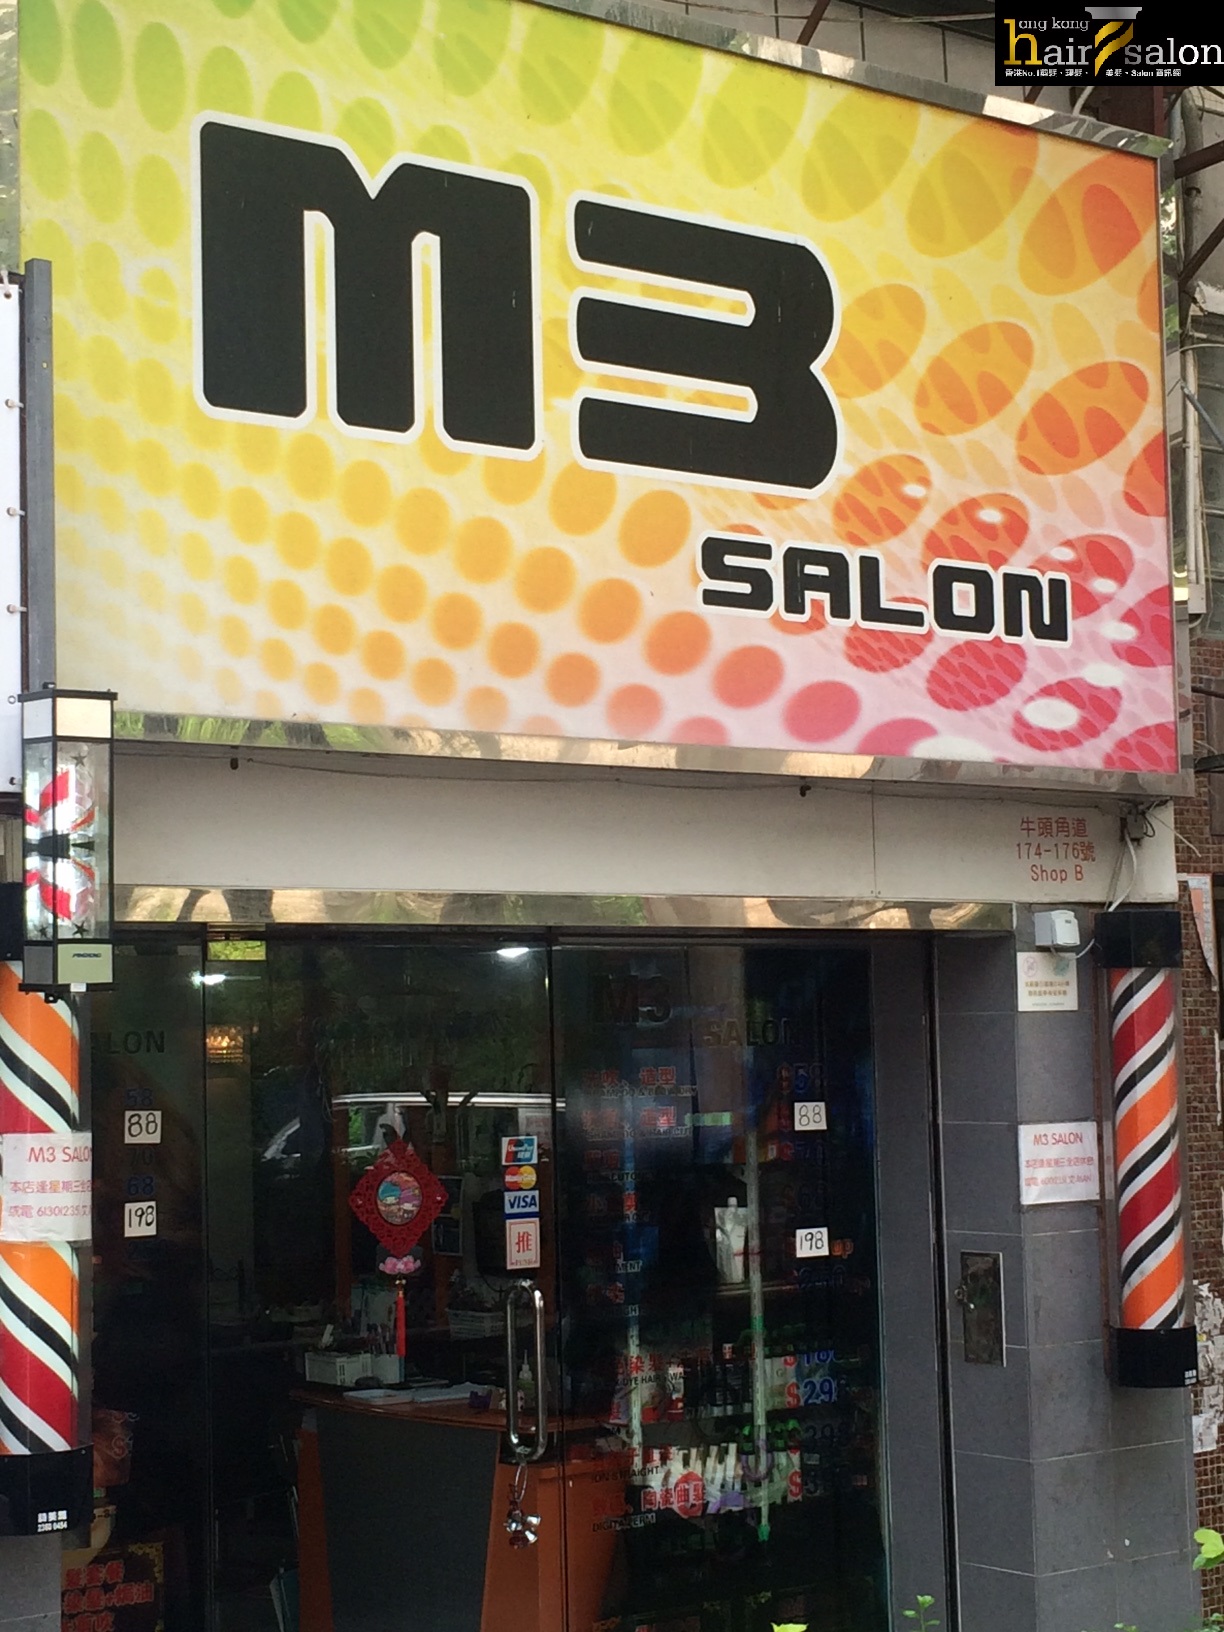 M3 SALON 之美髮評論評分: 愛上了染頭髮❤️❤️